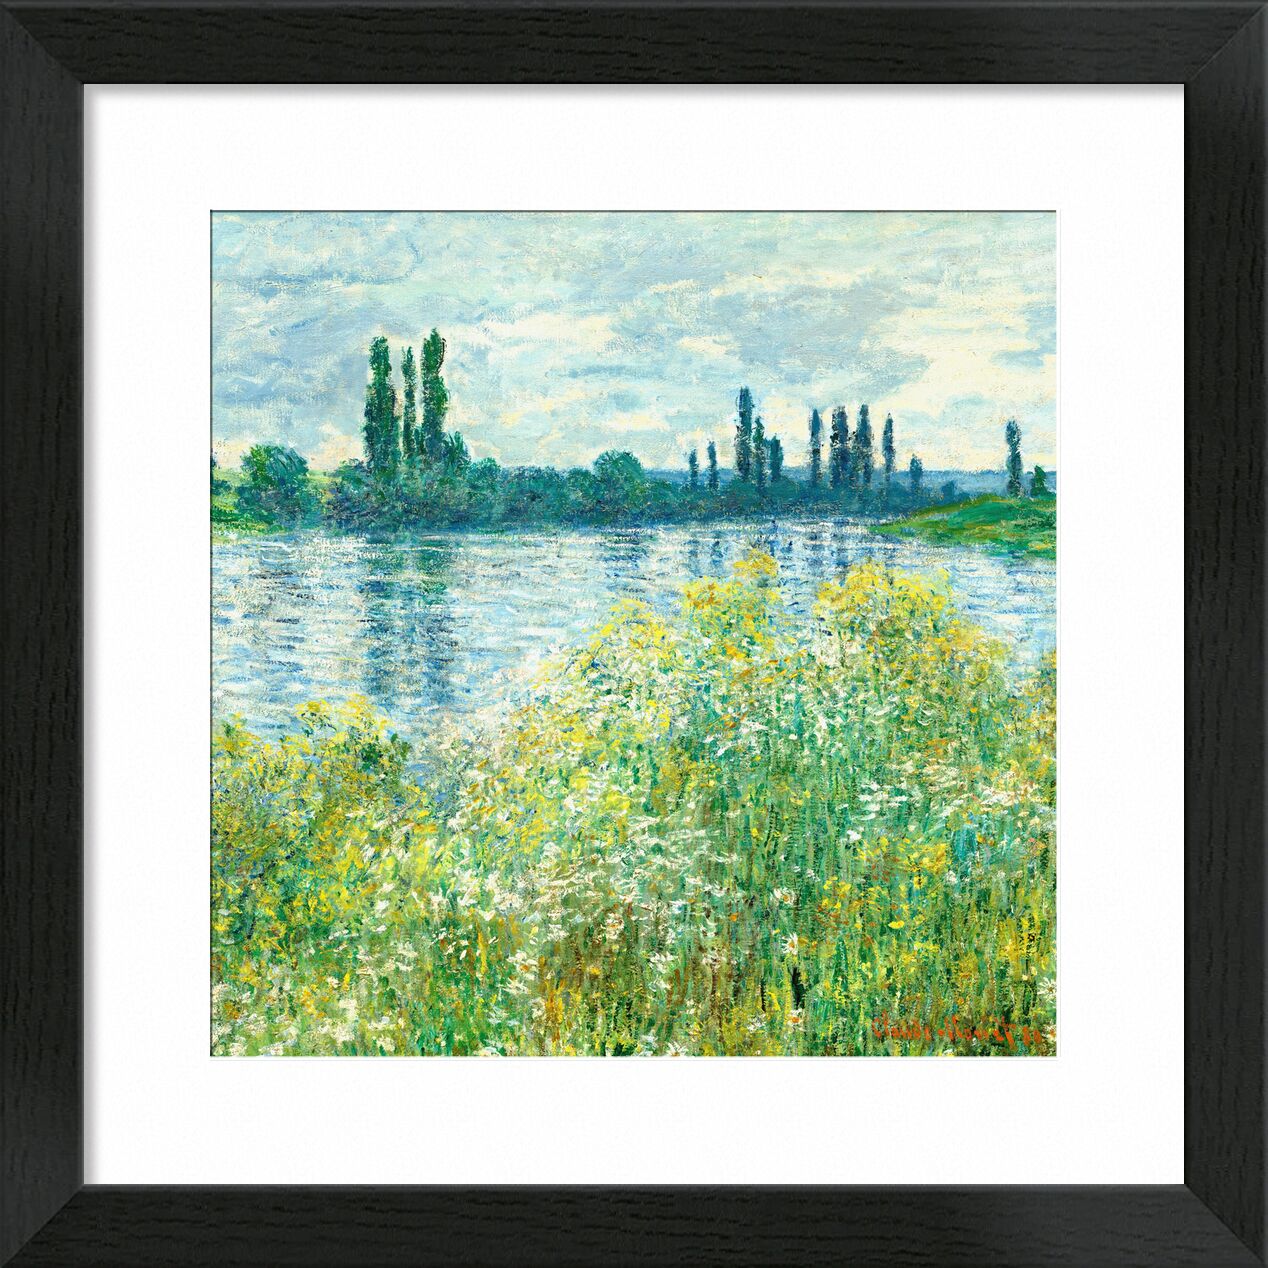 Die Ufer der Seine, Vetheuil - Square - Claude Monet von Bildende Kunst, Prodi Art, die Seine, monet, CLAUDE MONET, Landschaft, Natur, Fluss, Blumen, Teich, See